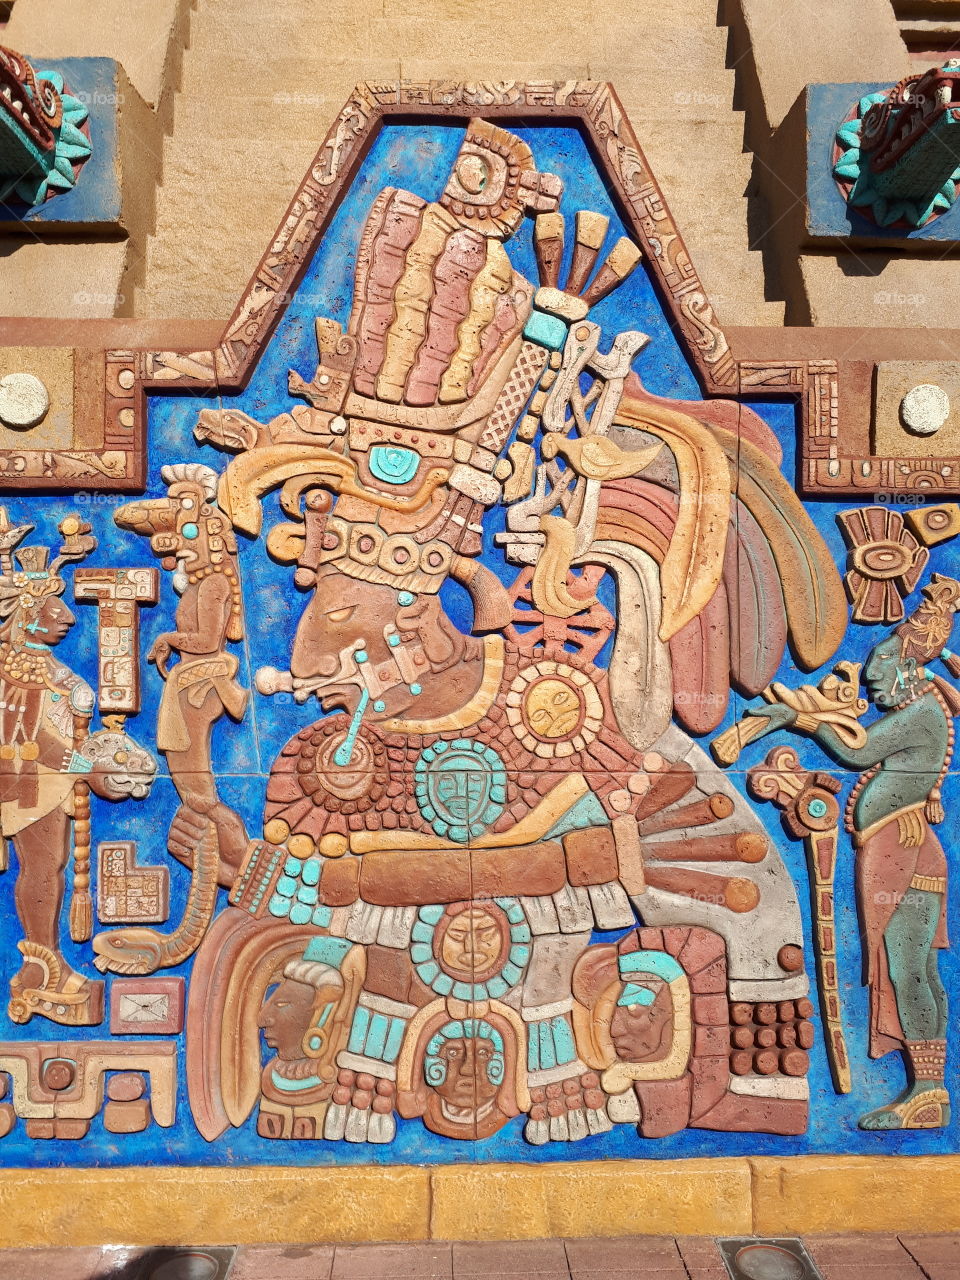 Representação de um pictograma da América-Central (semelhante à cultura Maia, Asteca, etc). Foto tirada de um parque temático representando as cores e cultura dessa região.